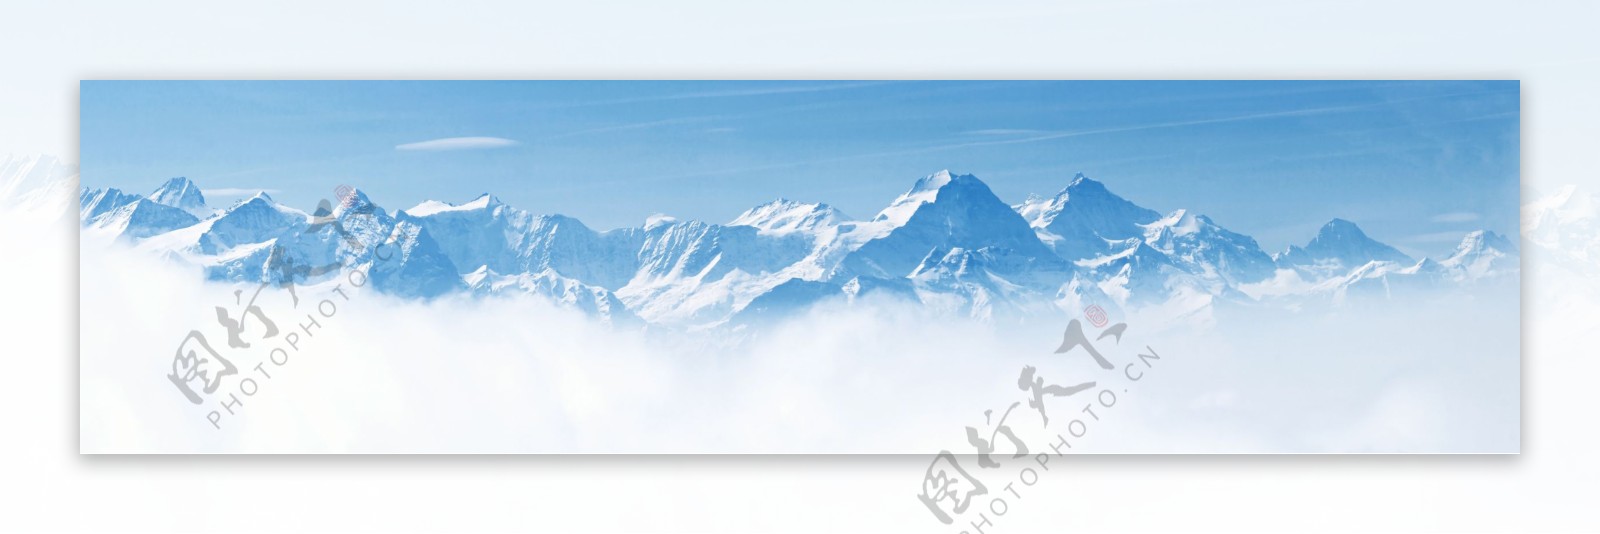 美丽雪山风景摄影图片